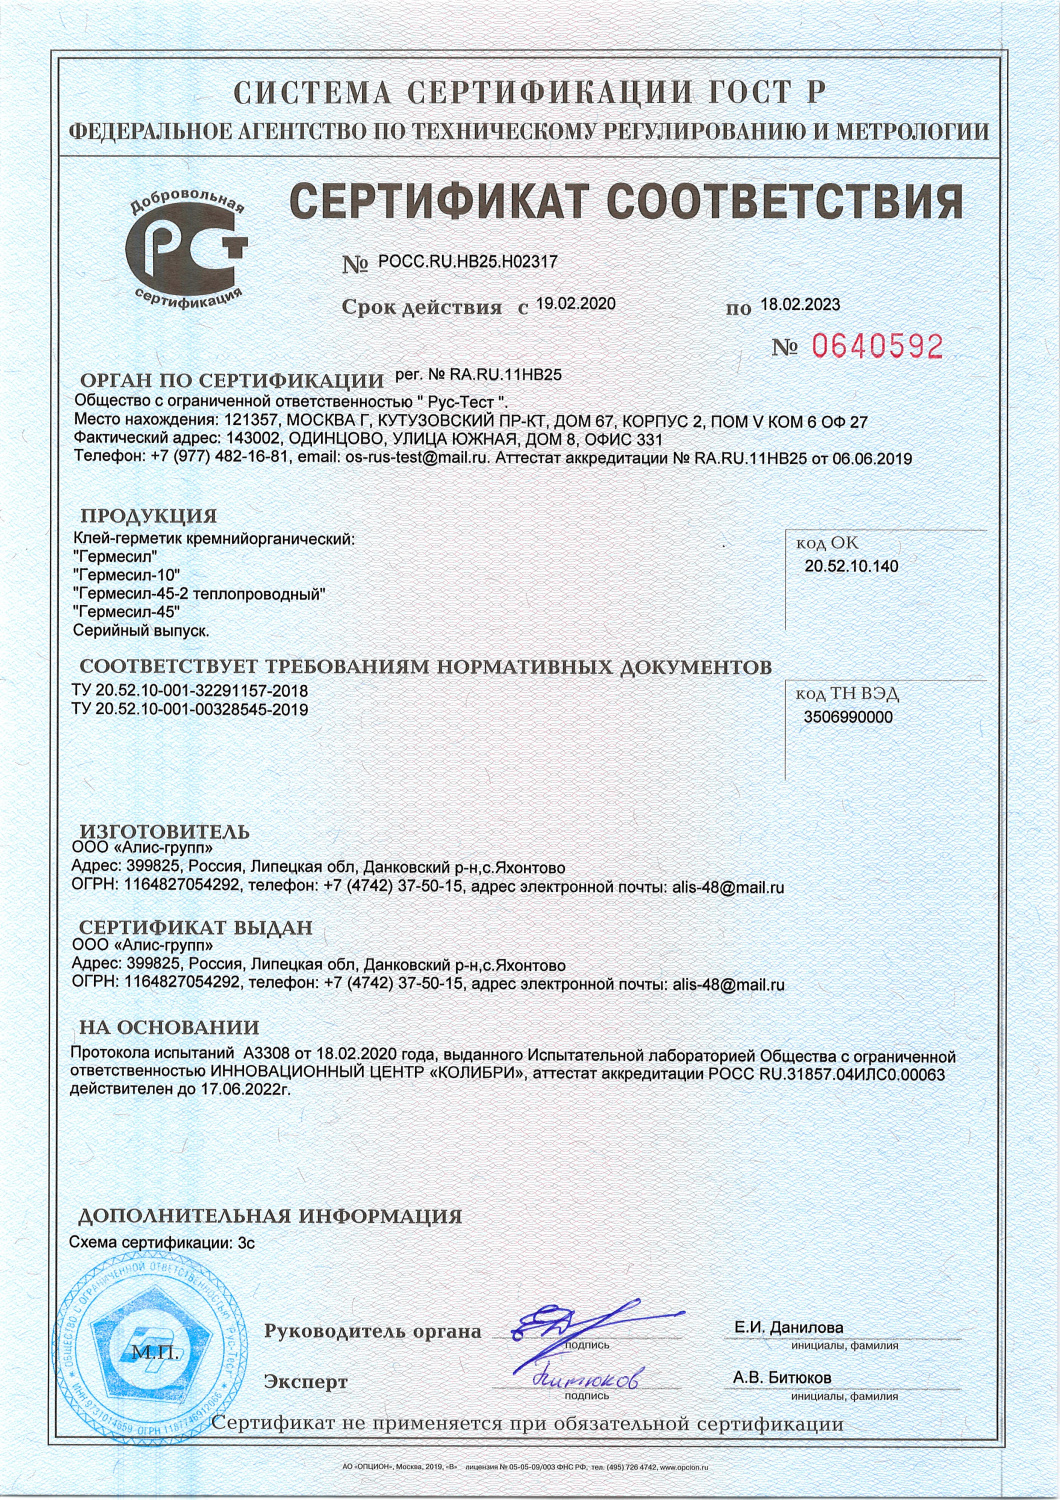 Сертификат соответствия Гермесил от 2020 г